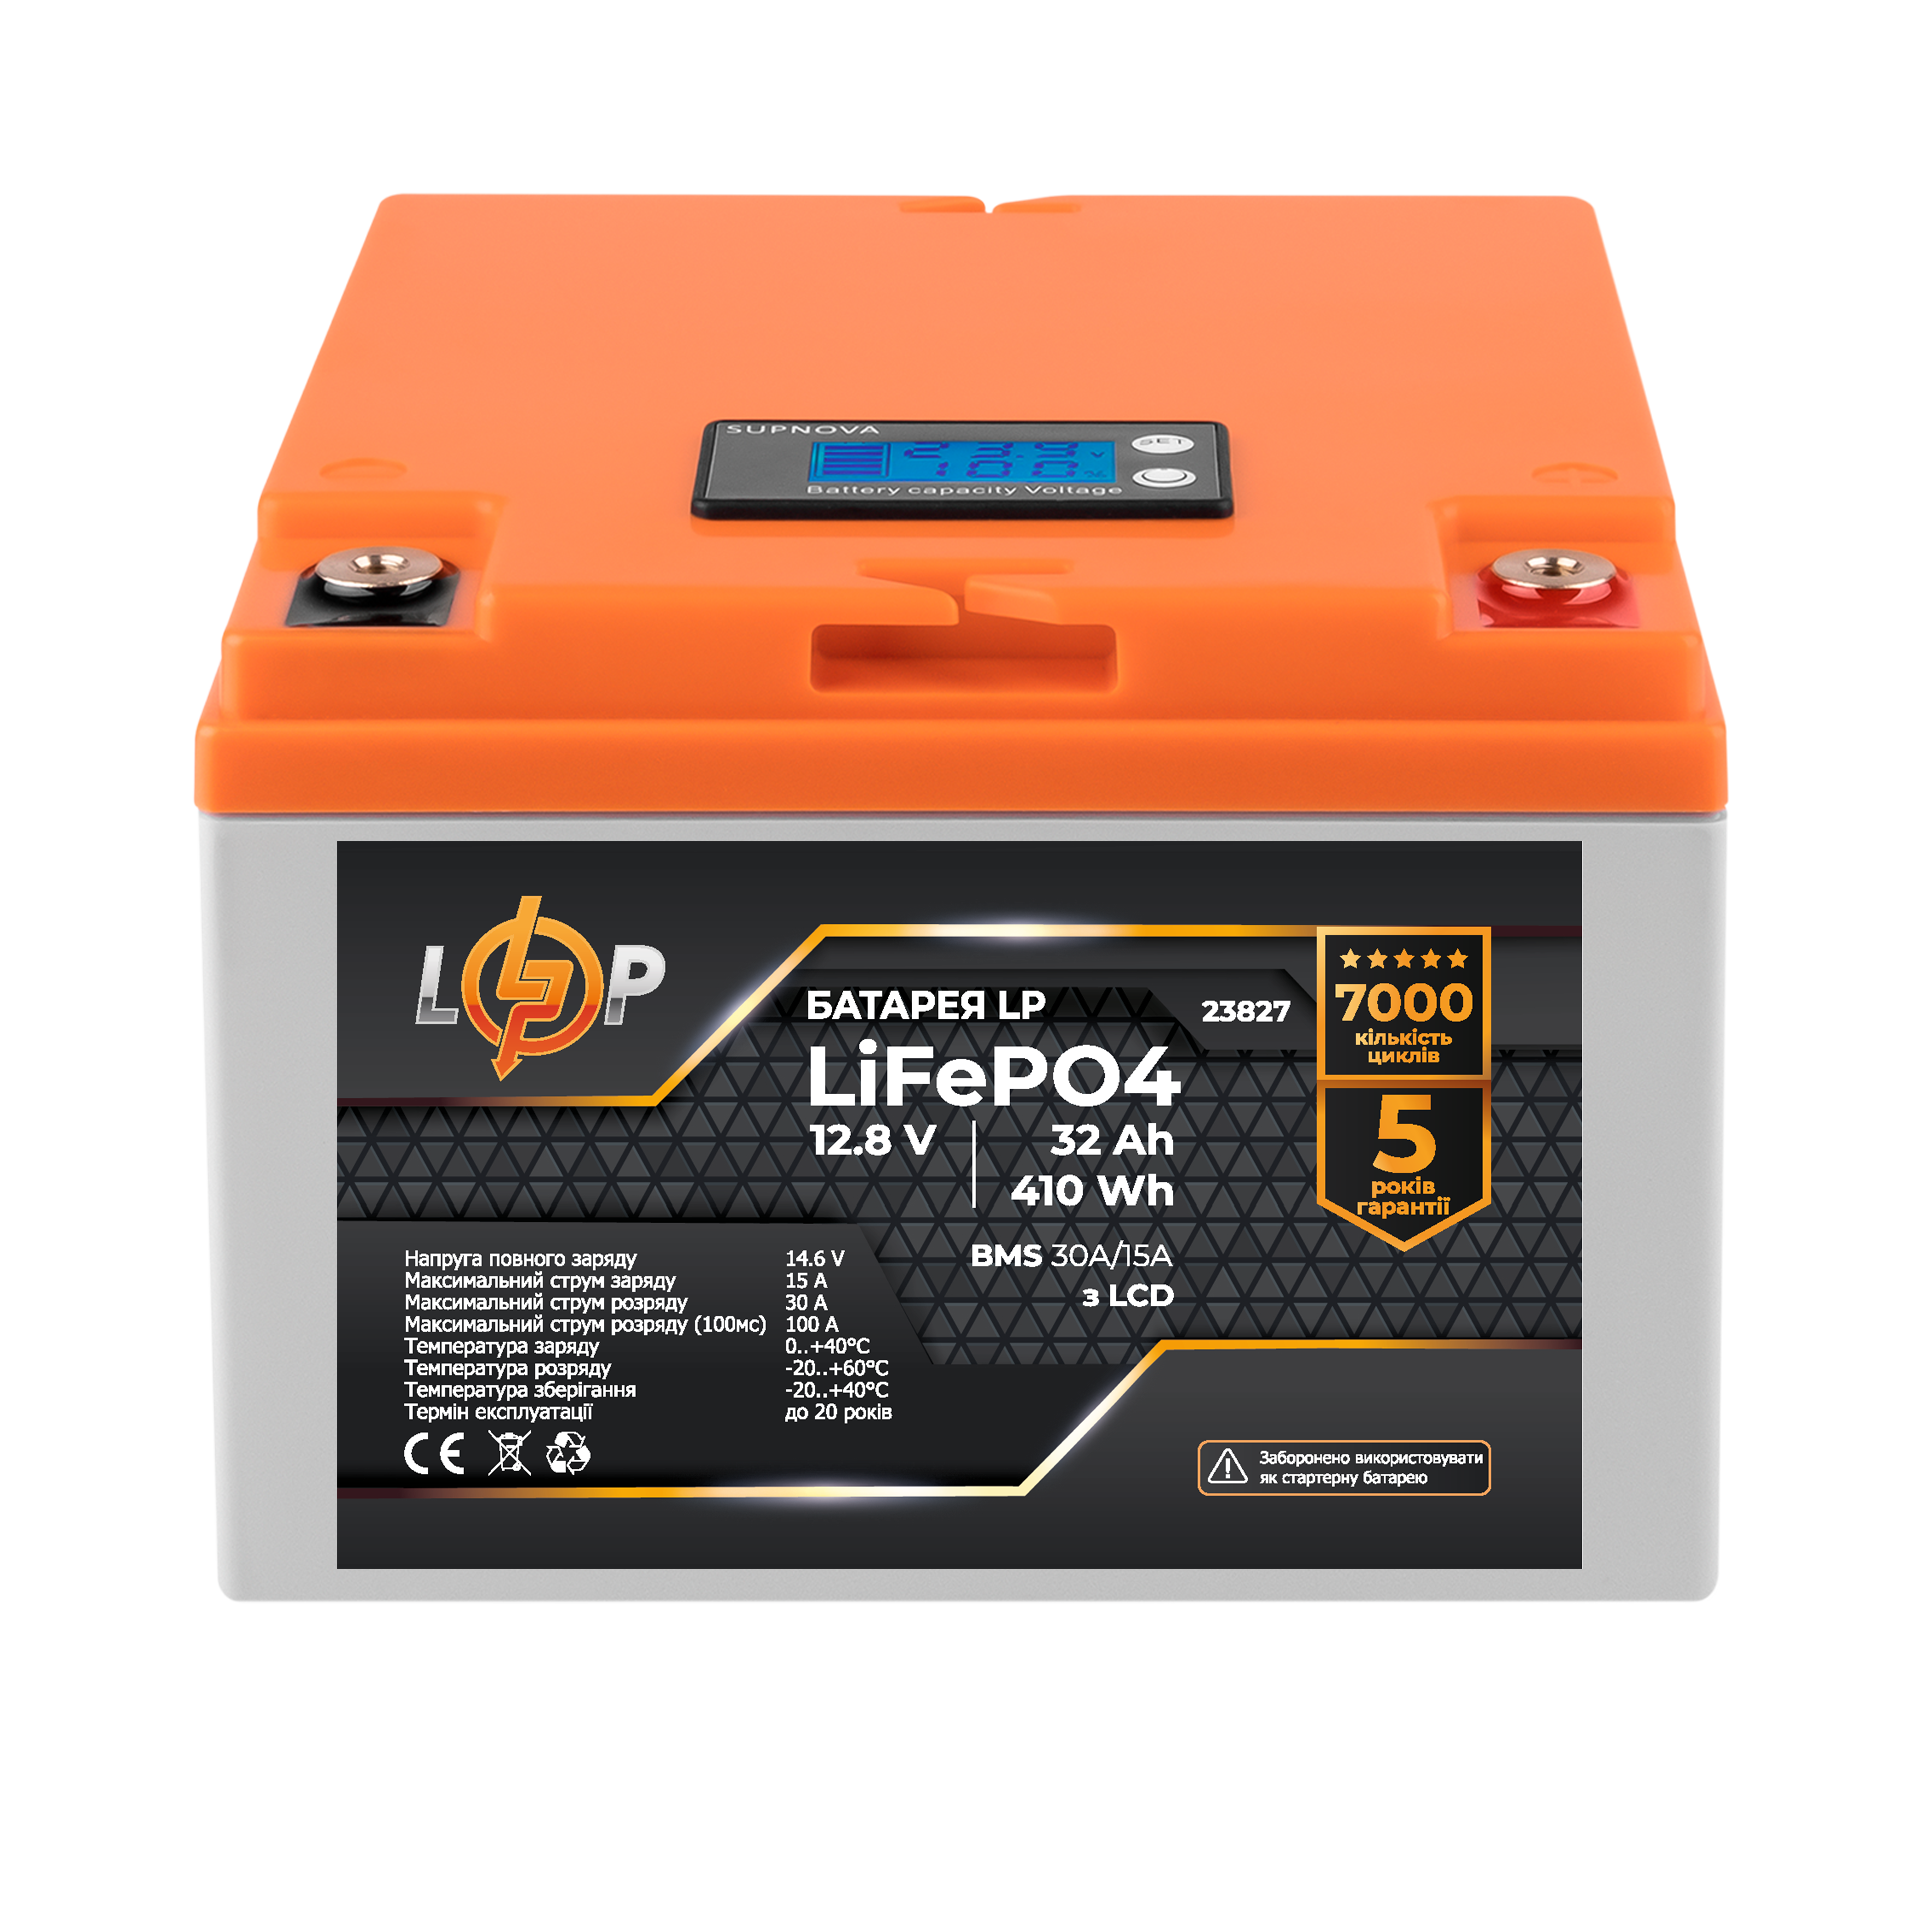 LP LiFePO4 12,8V - 32 Ah (410Wh) (BMS 30А/15A) пластик LCD (23827)